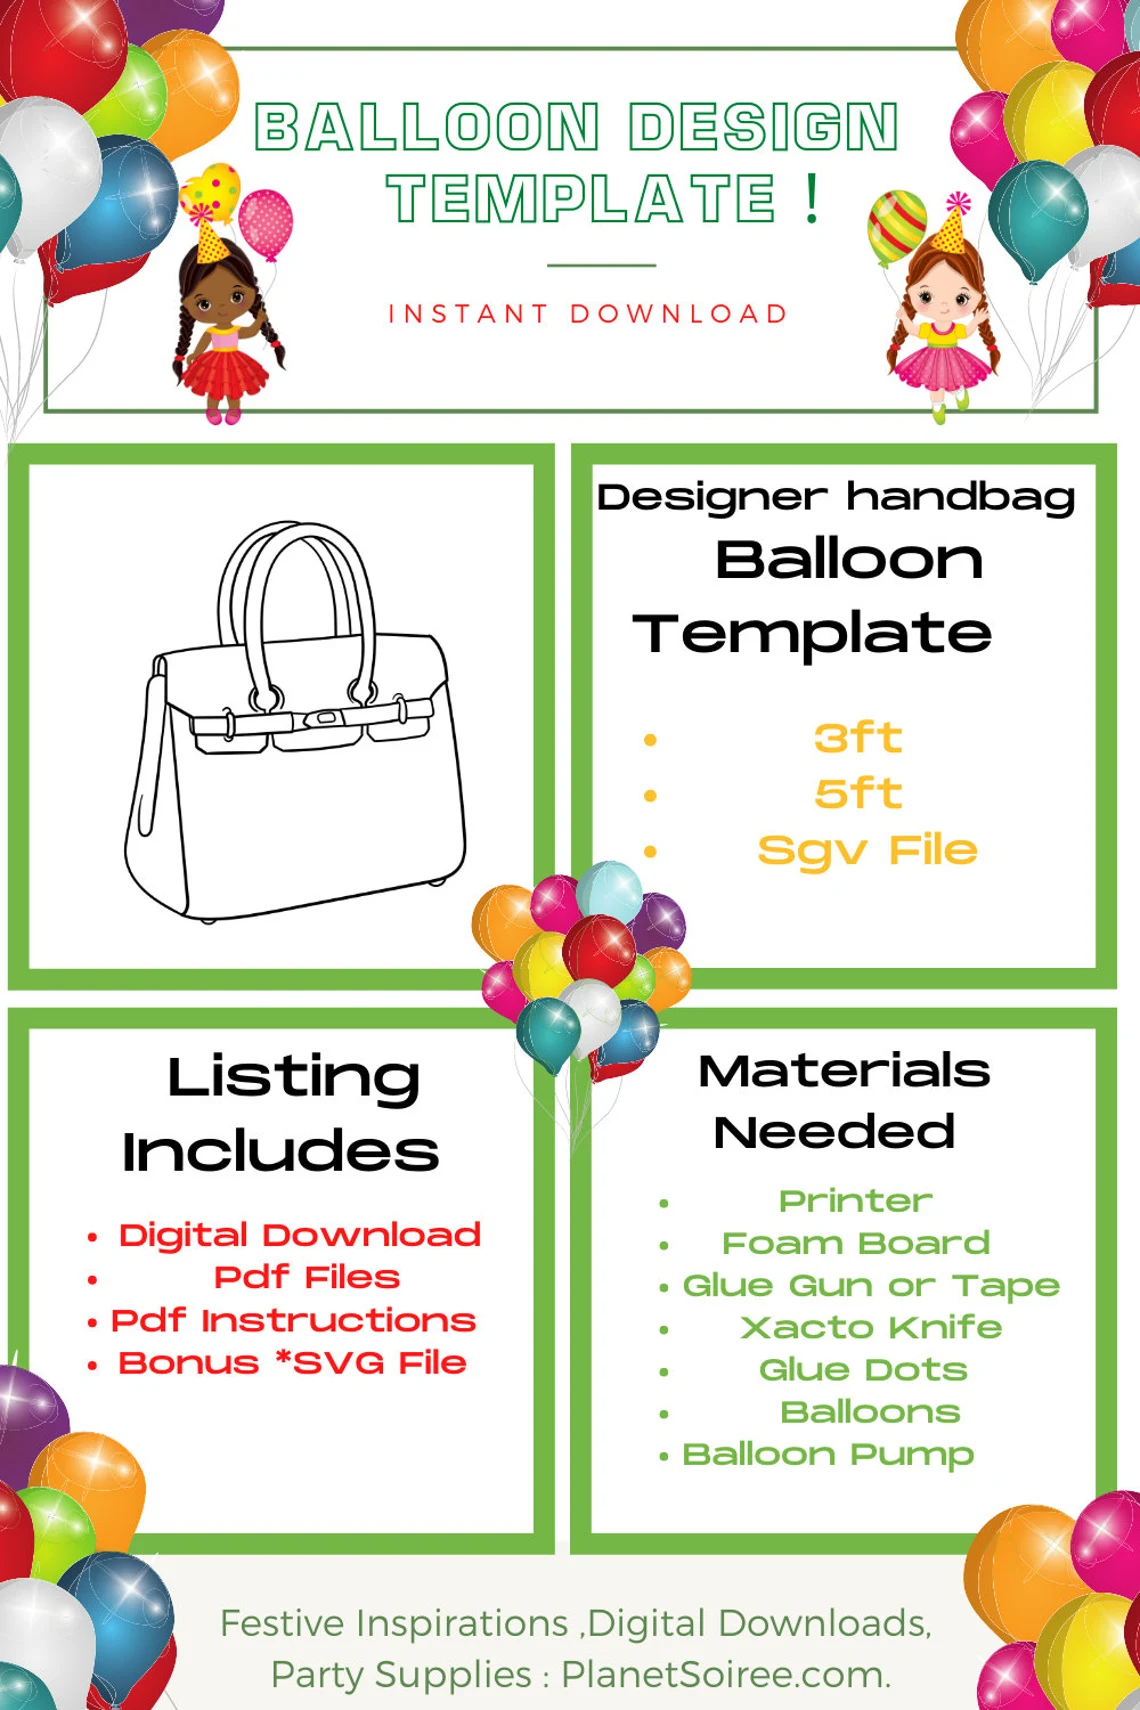 Designer Bag Balloon Template Digital Downloads-Balloon Mosaic Designer Bag Template , 30th Birthday Balloon templates.